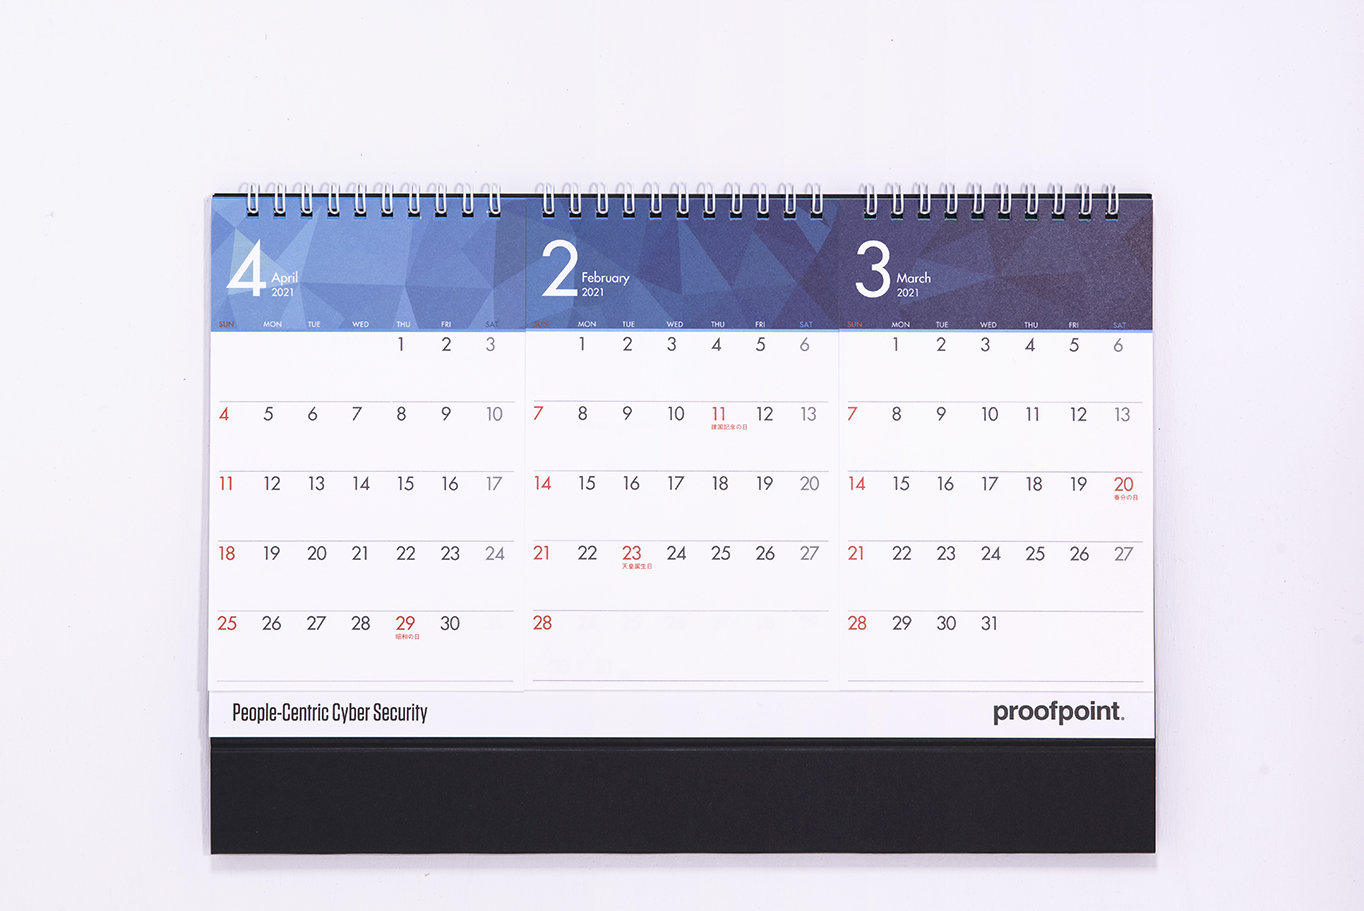 Proofpoint様の2021年卓上カレンダーはセパレートタイプで3ヵ月分が見られます。